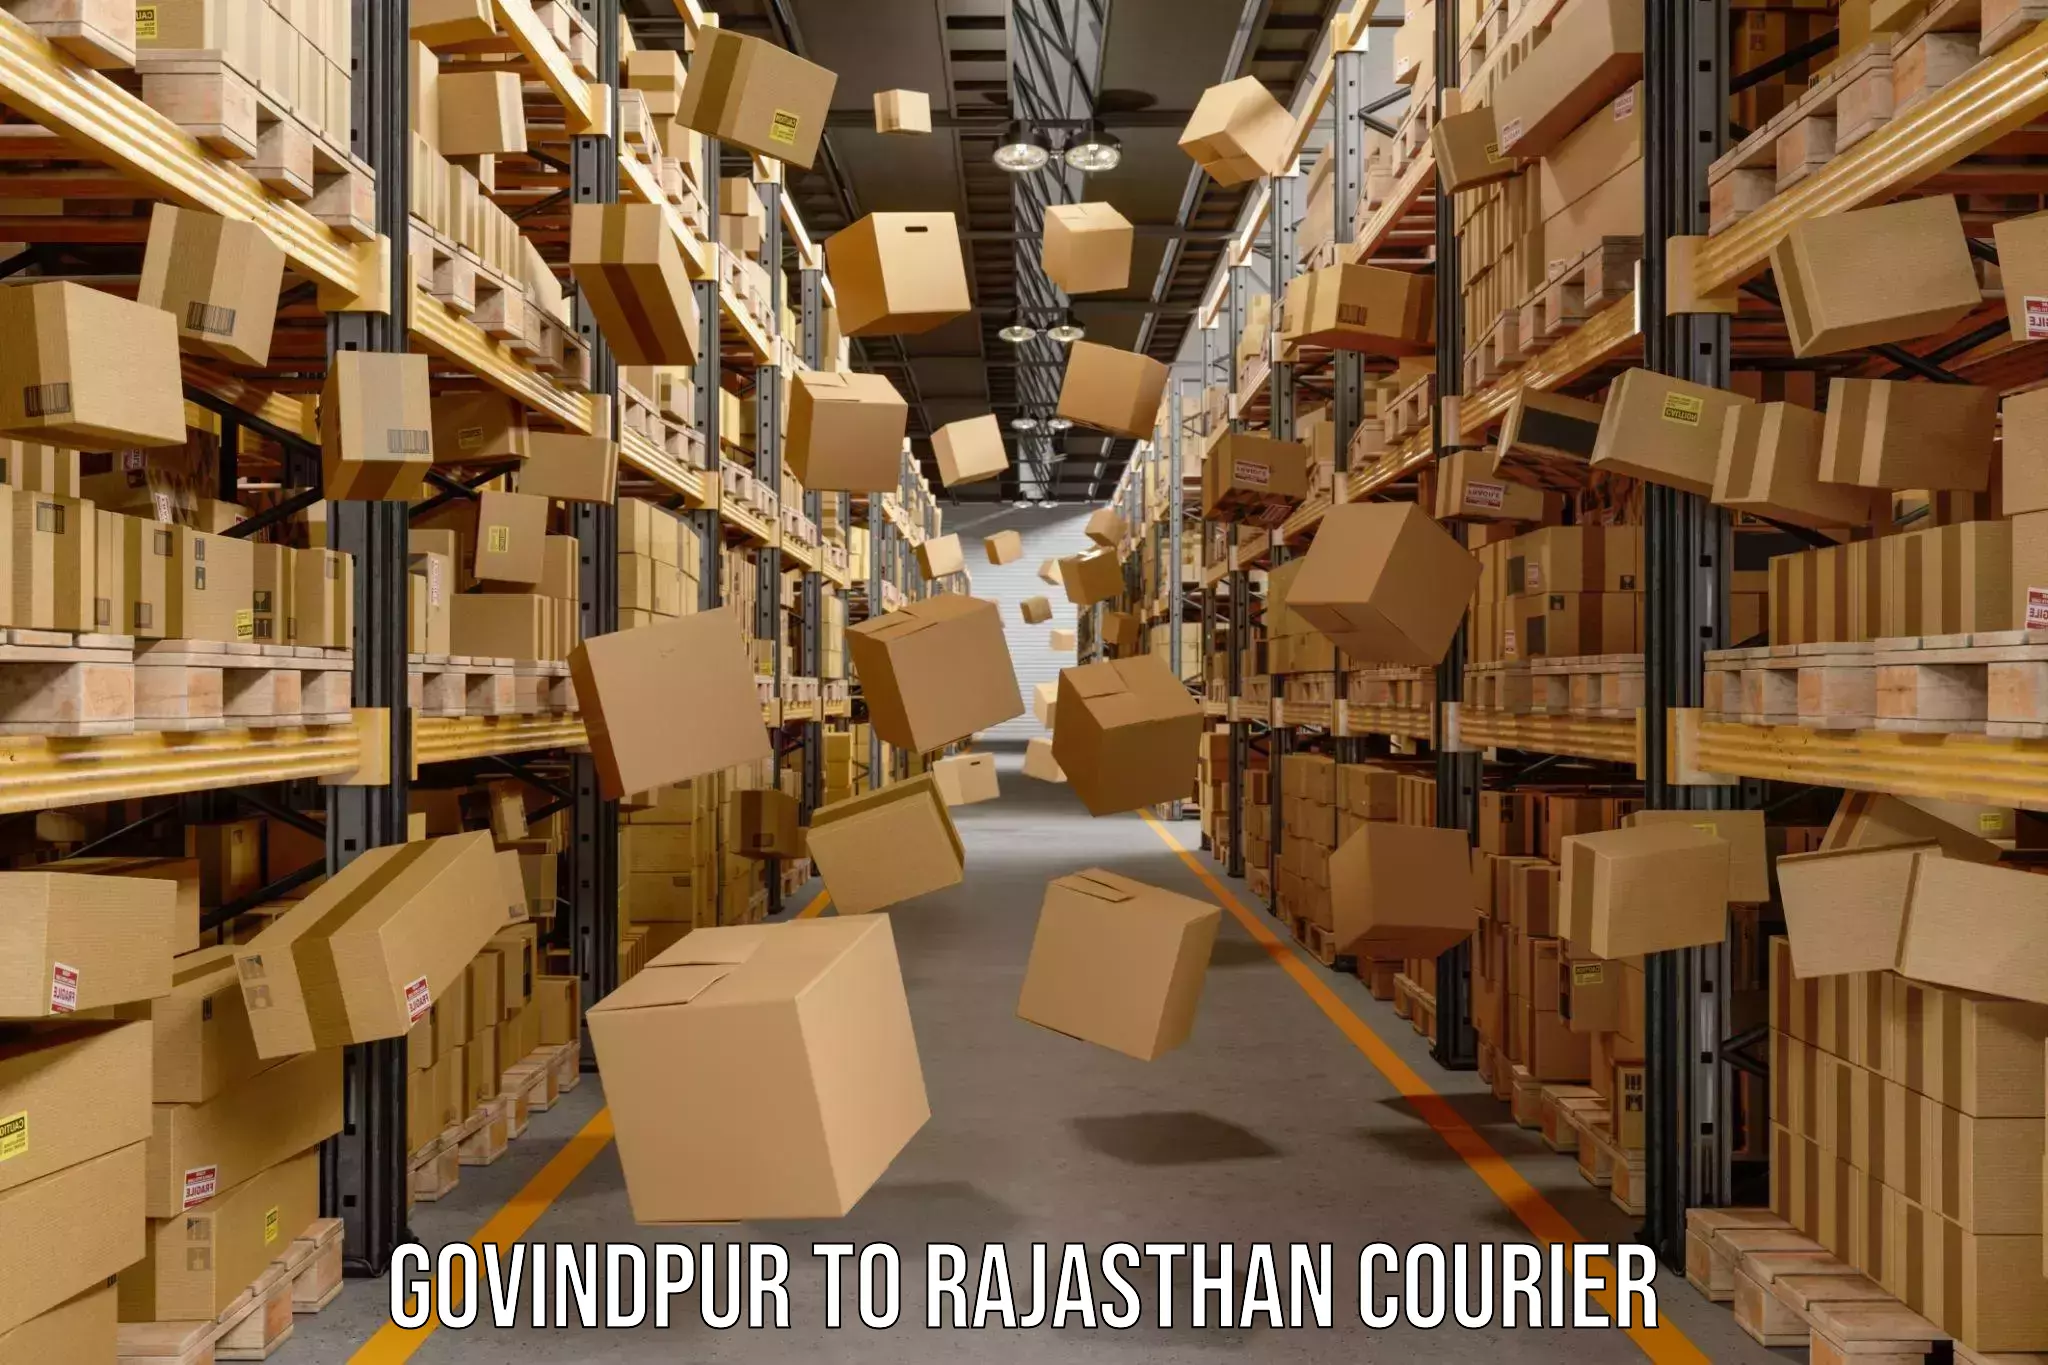 Digital courier platforms Govindpur to Rajasthan